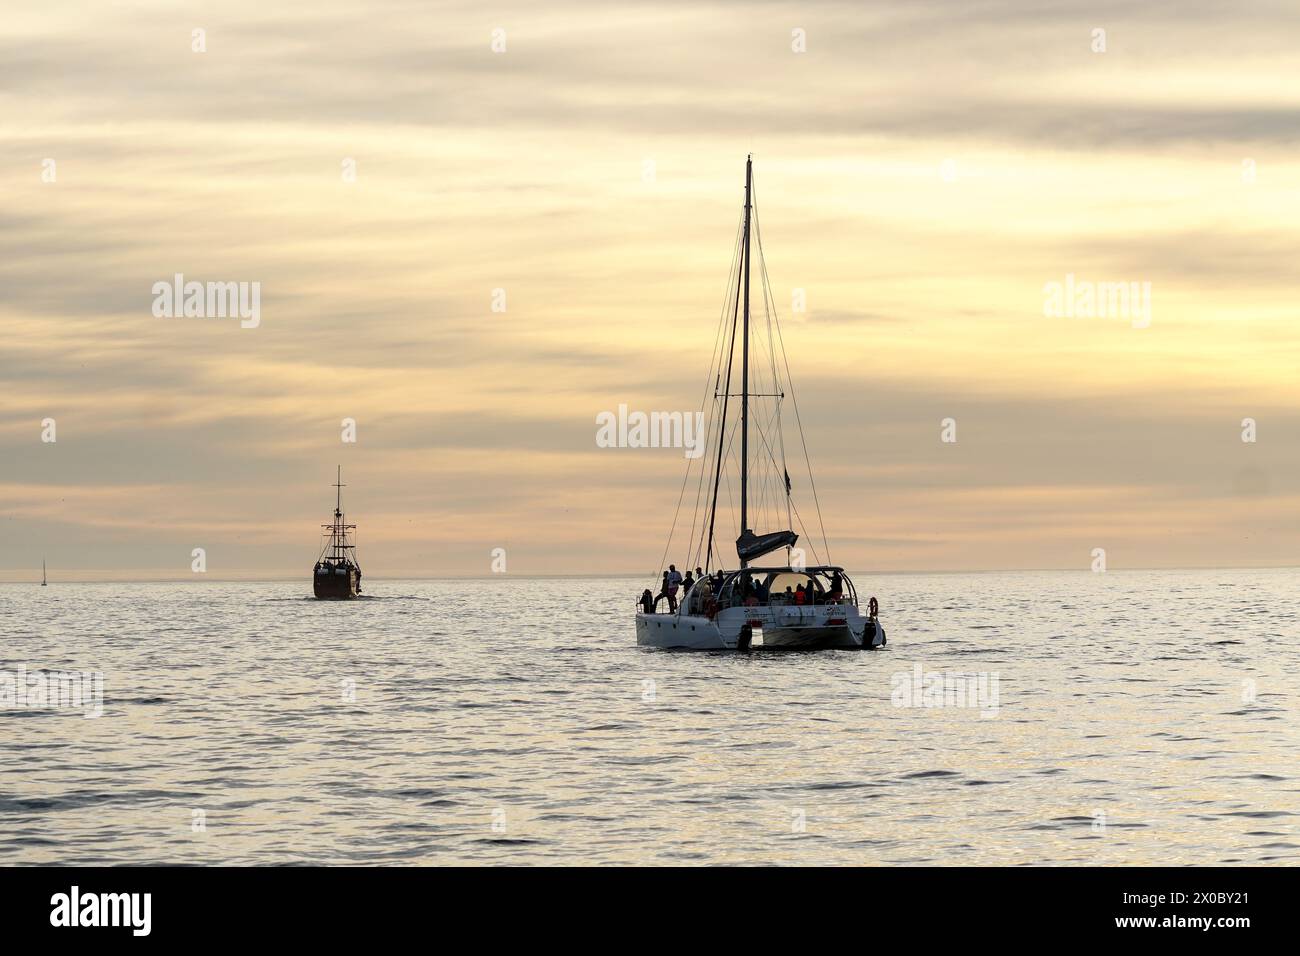 Crociera al tramonto con champagne, Table Bay, città del Capo, Sud Africa, serate di mare calme con yacht e viaggi e turismo in barca Foto Stock